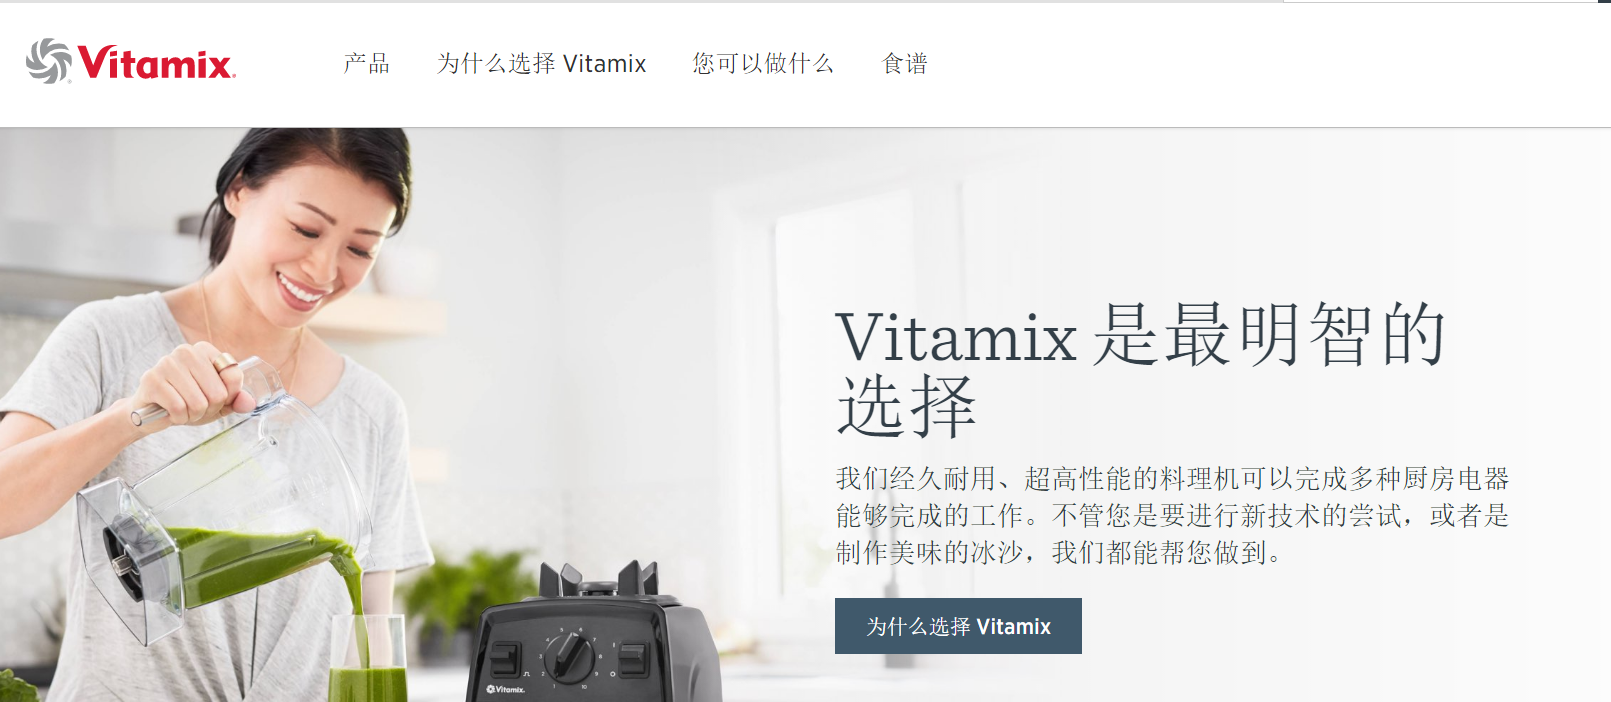 vitamix官网  vitamix破壁机官网 vitamix美国官网 vitamix中国官网